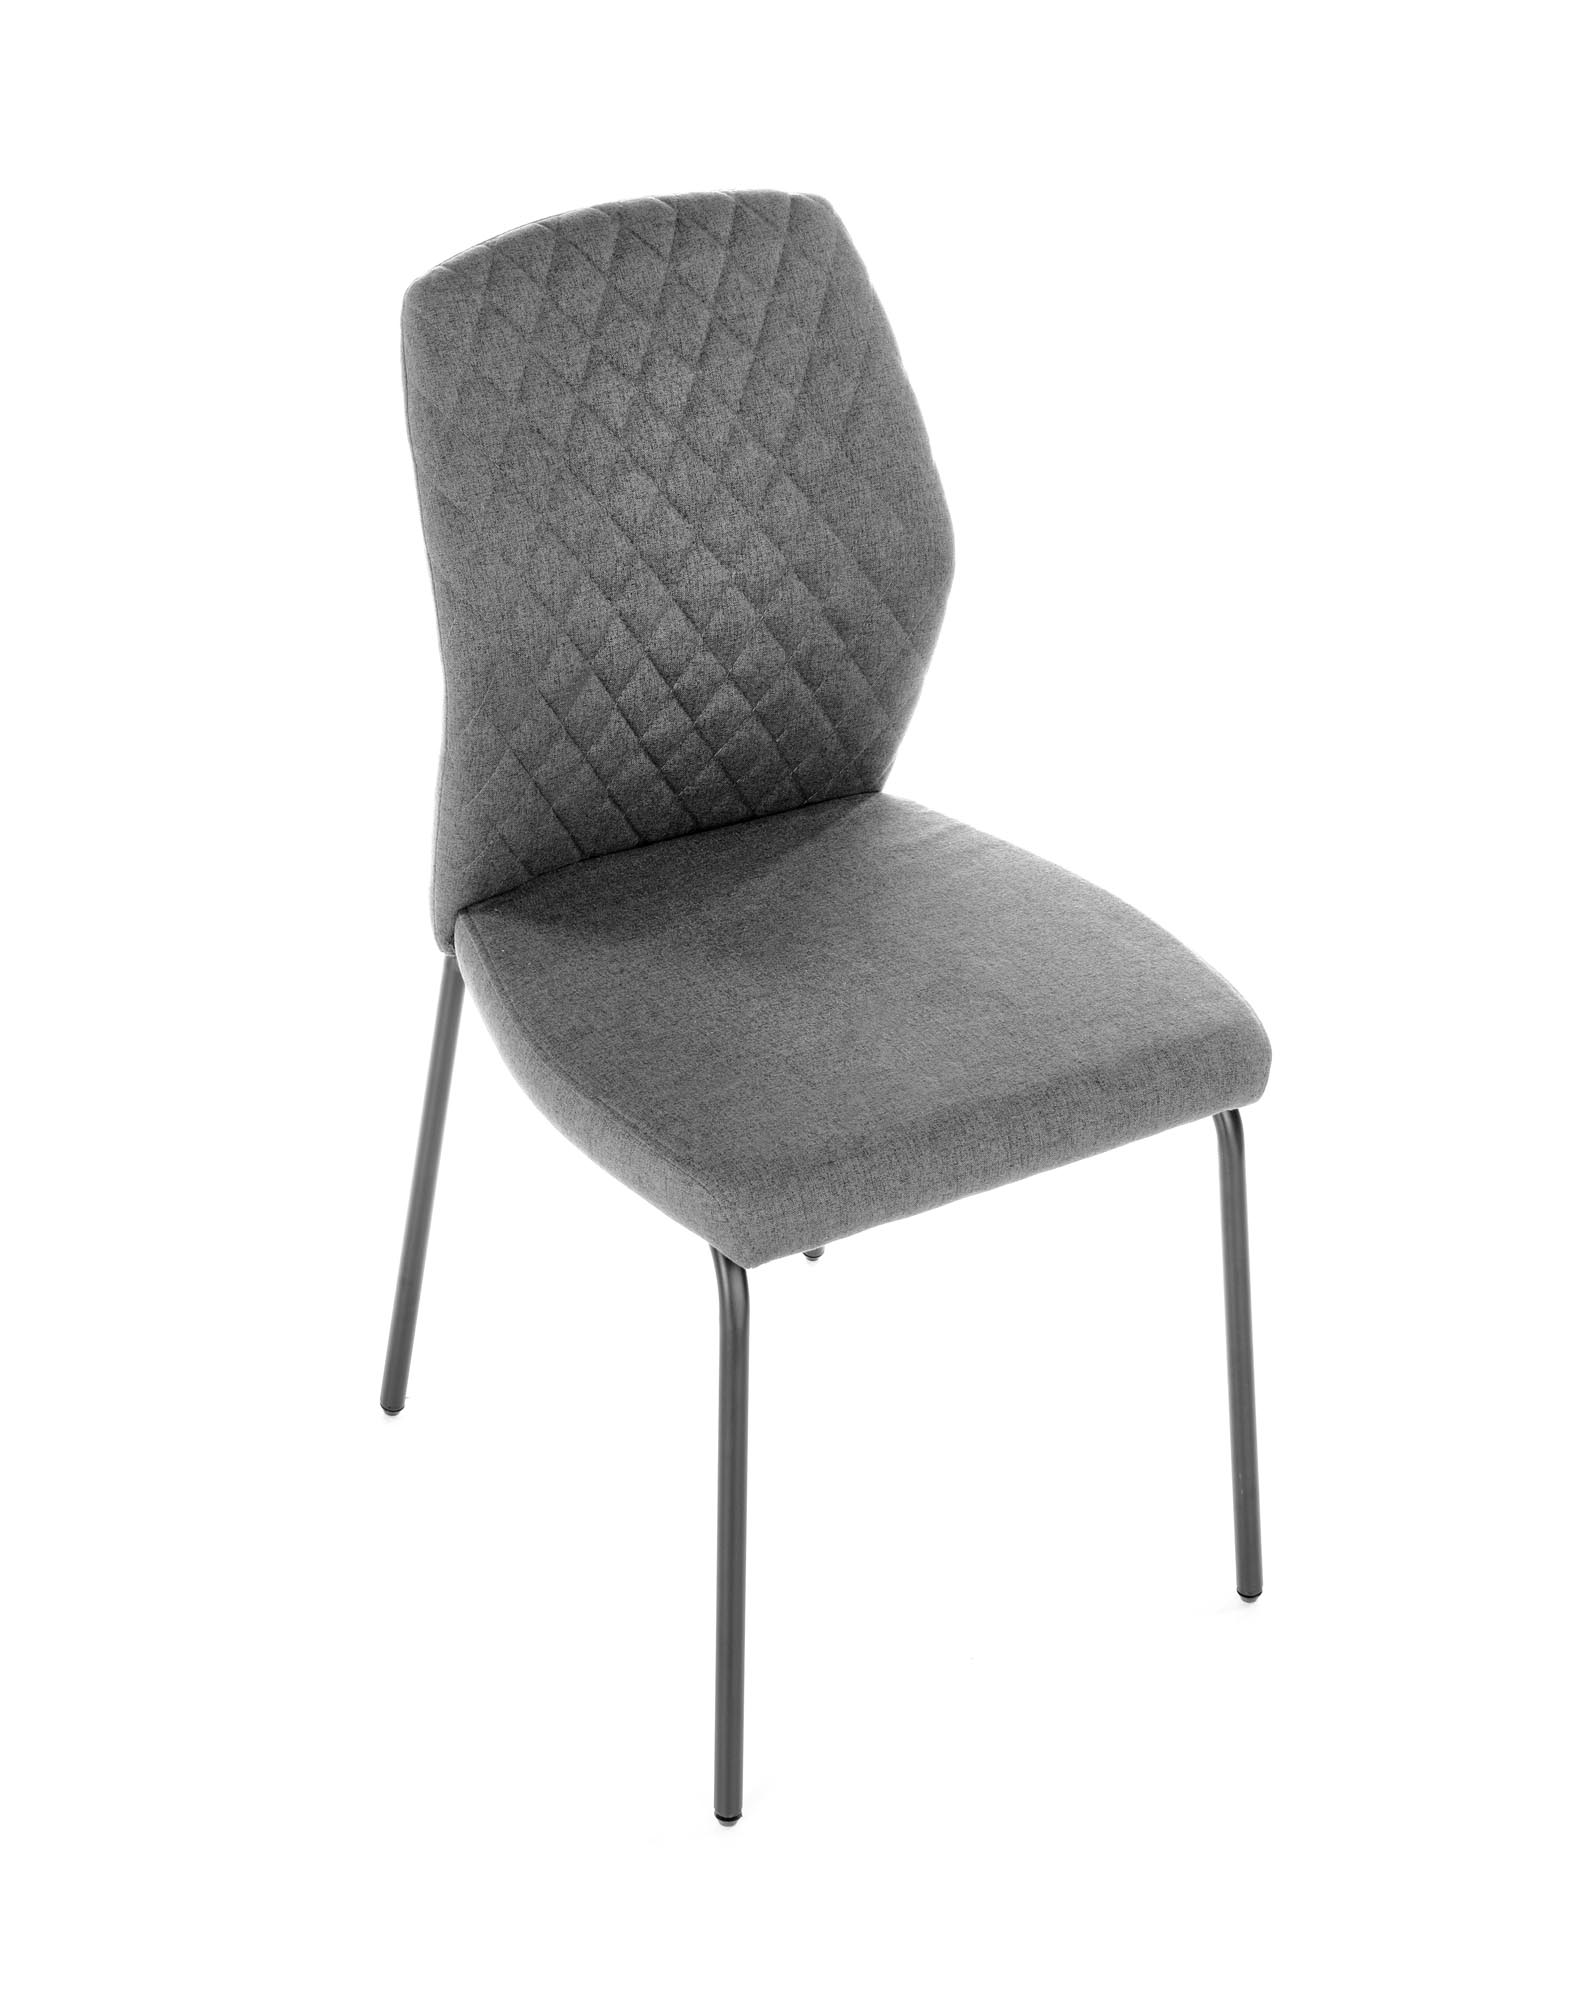 K461 krzesło popiel k461 krzesło popiel